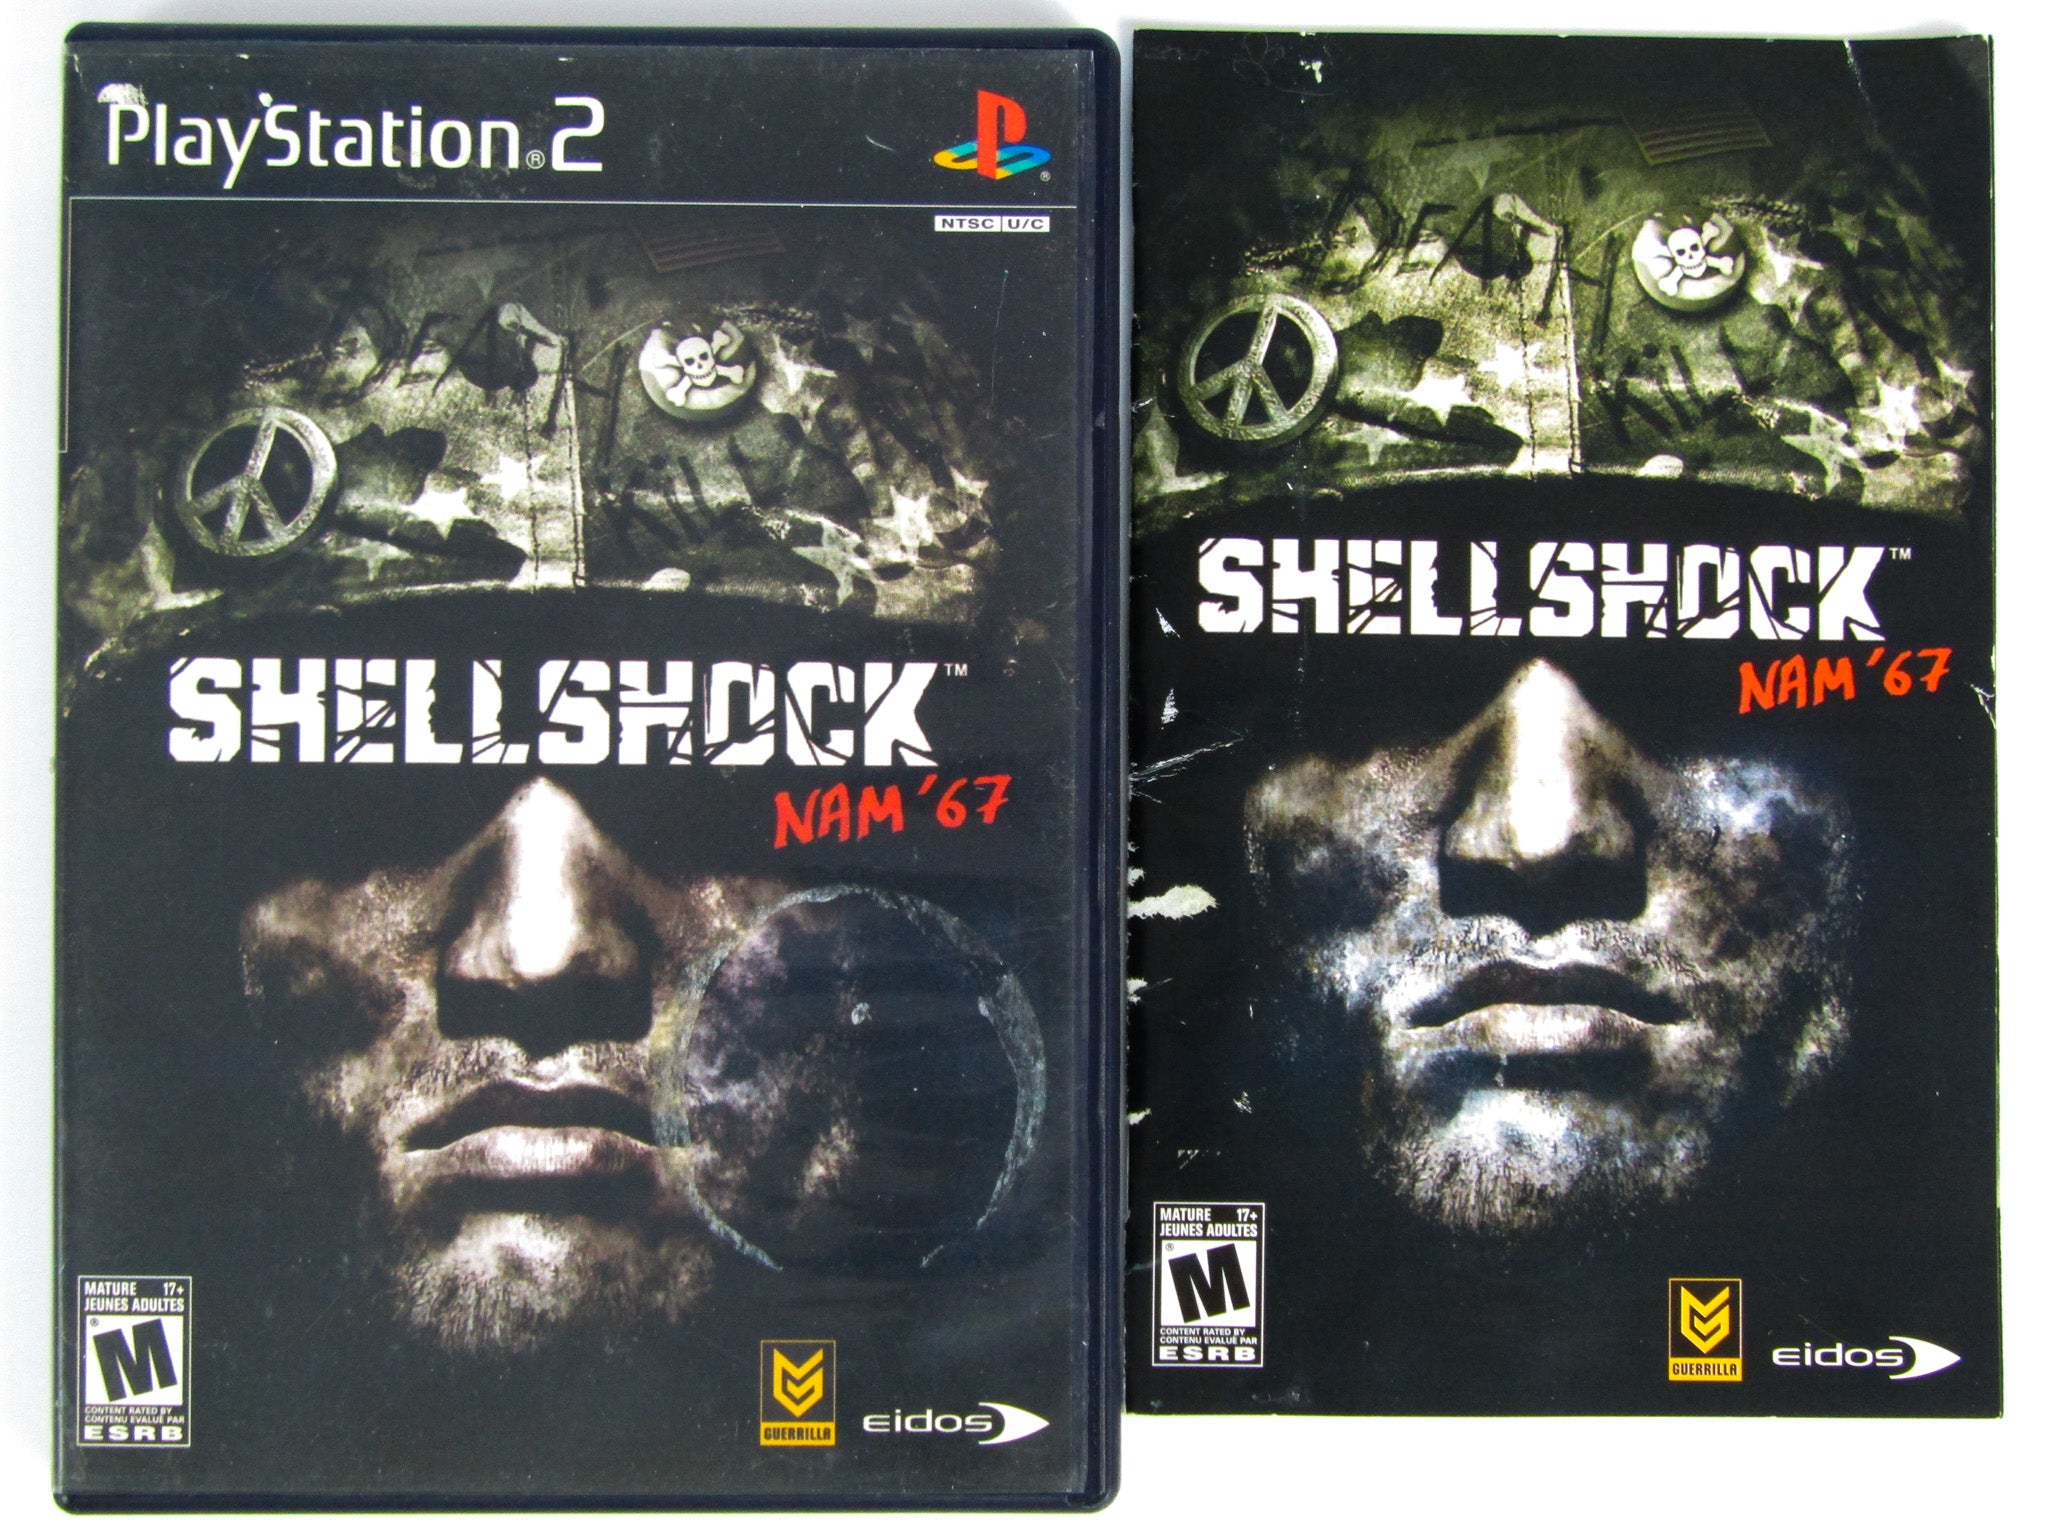 ShellShock - Nam '67 [SLUS 20828] (Sony Playstation 2) - Box Scans